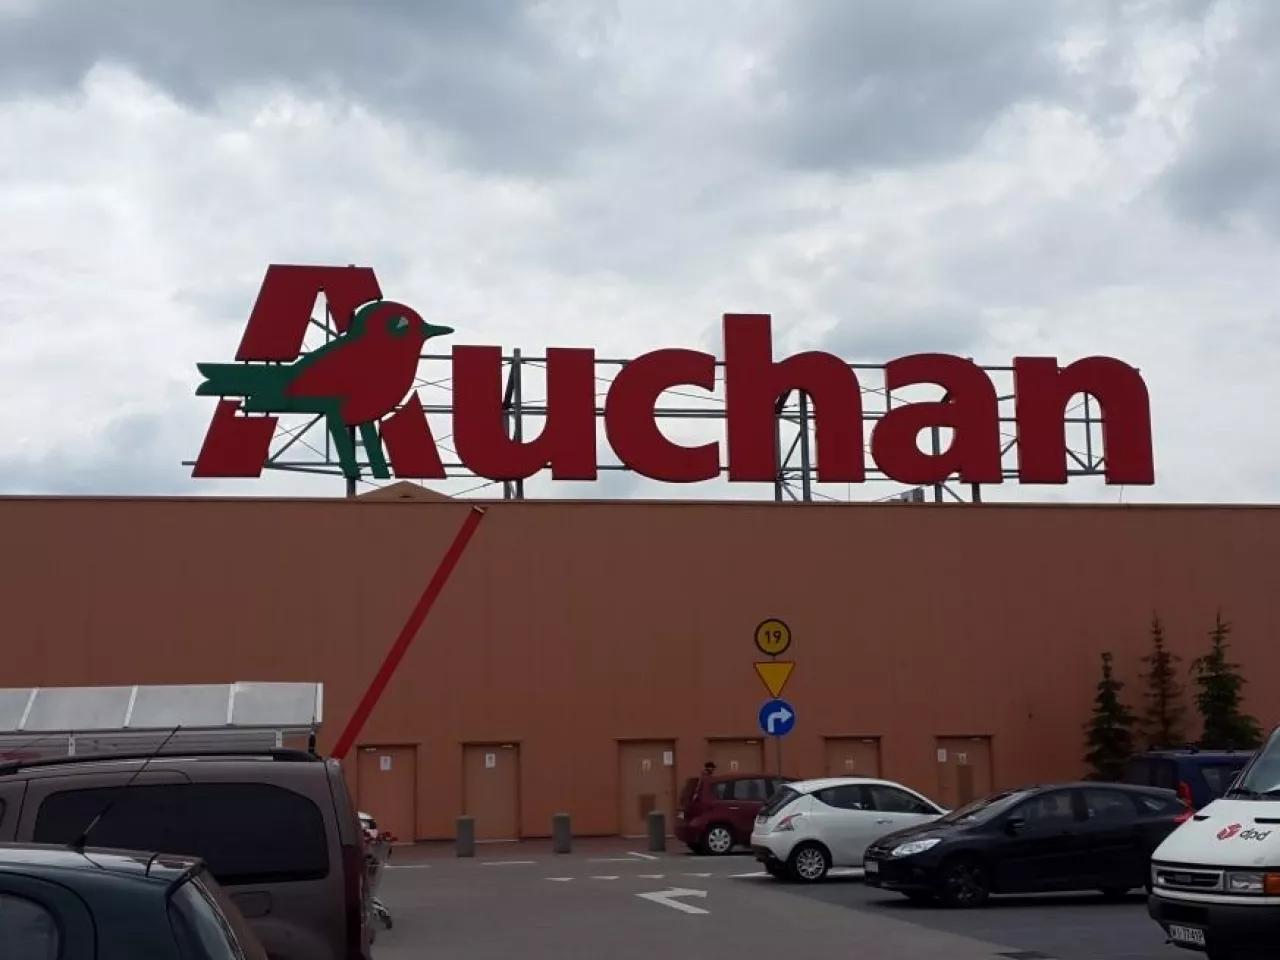 Na zdj. hipermarket Auchan w Łomiankach (fot. wiadomoscihandlowe.pl)